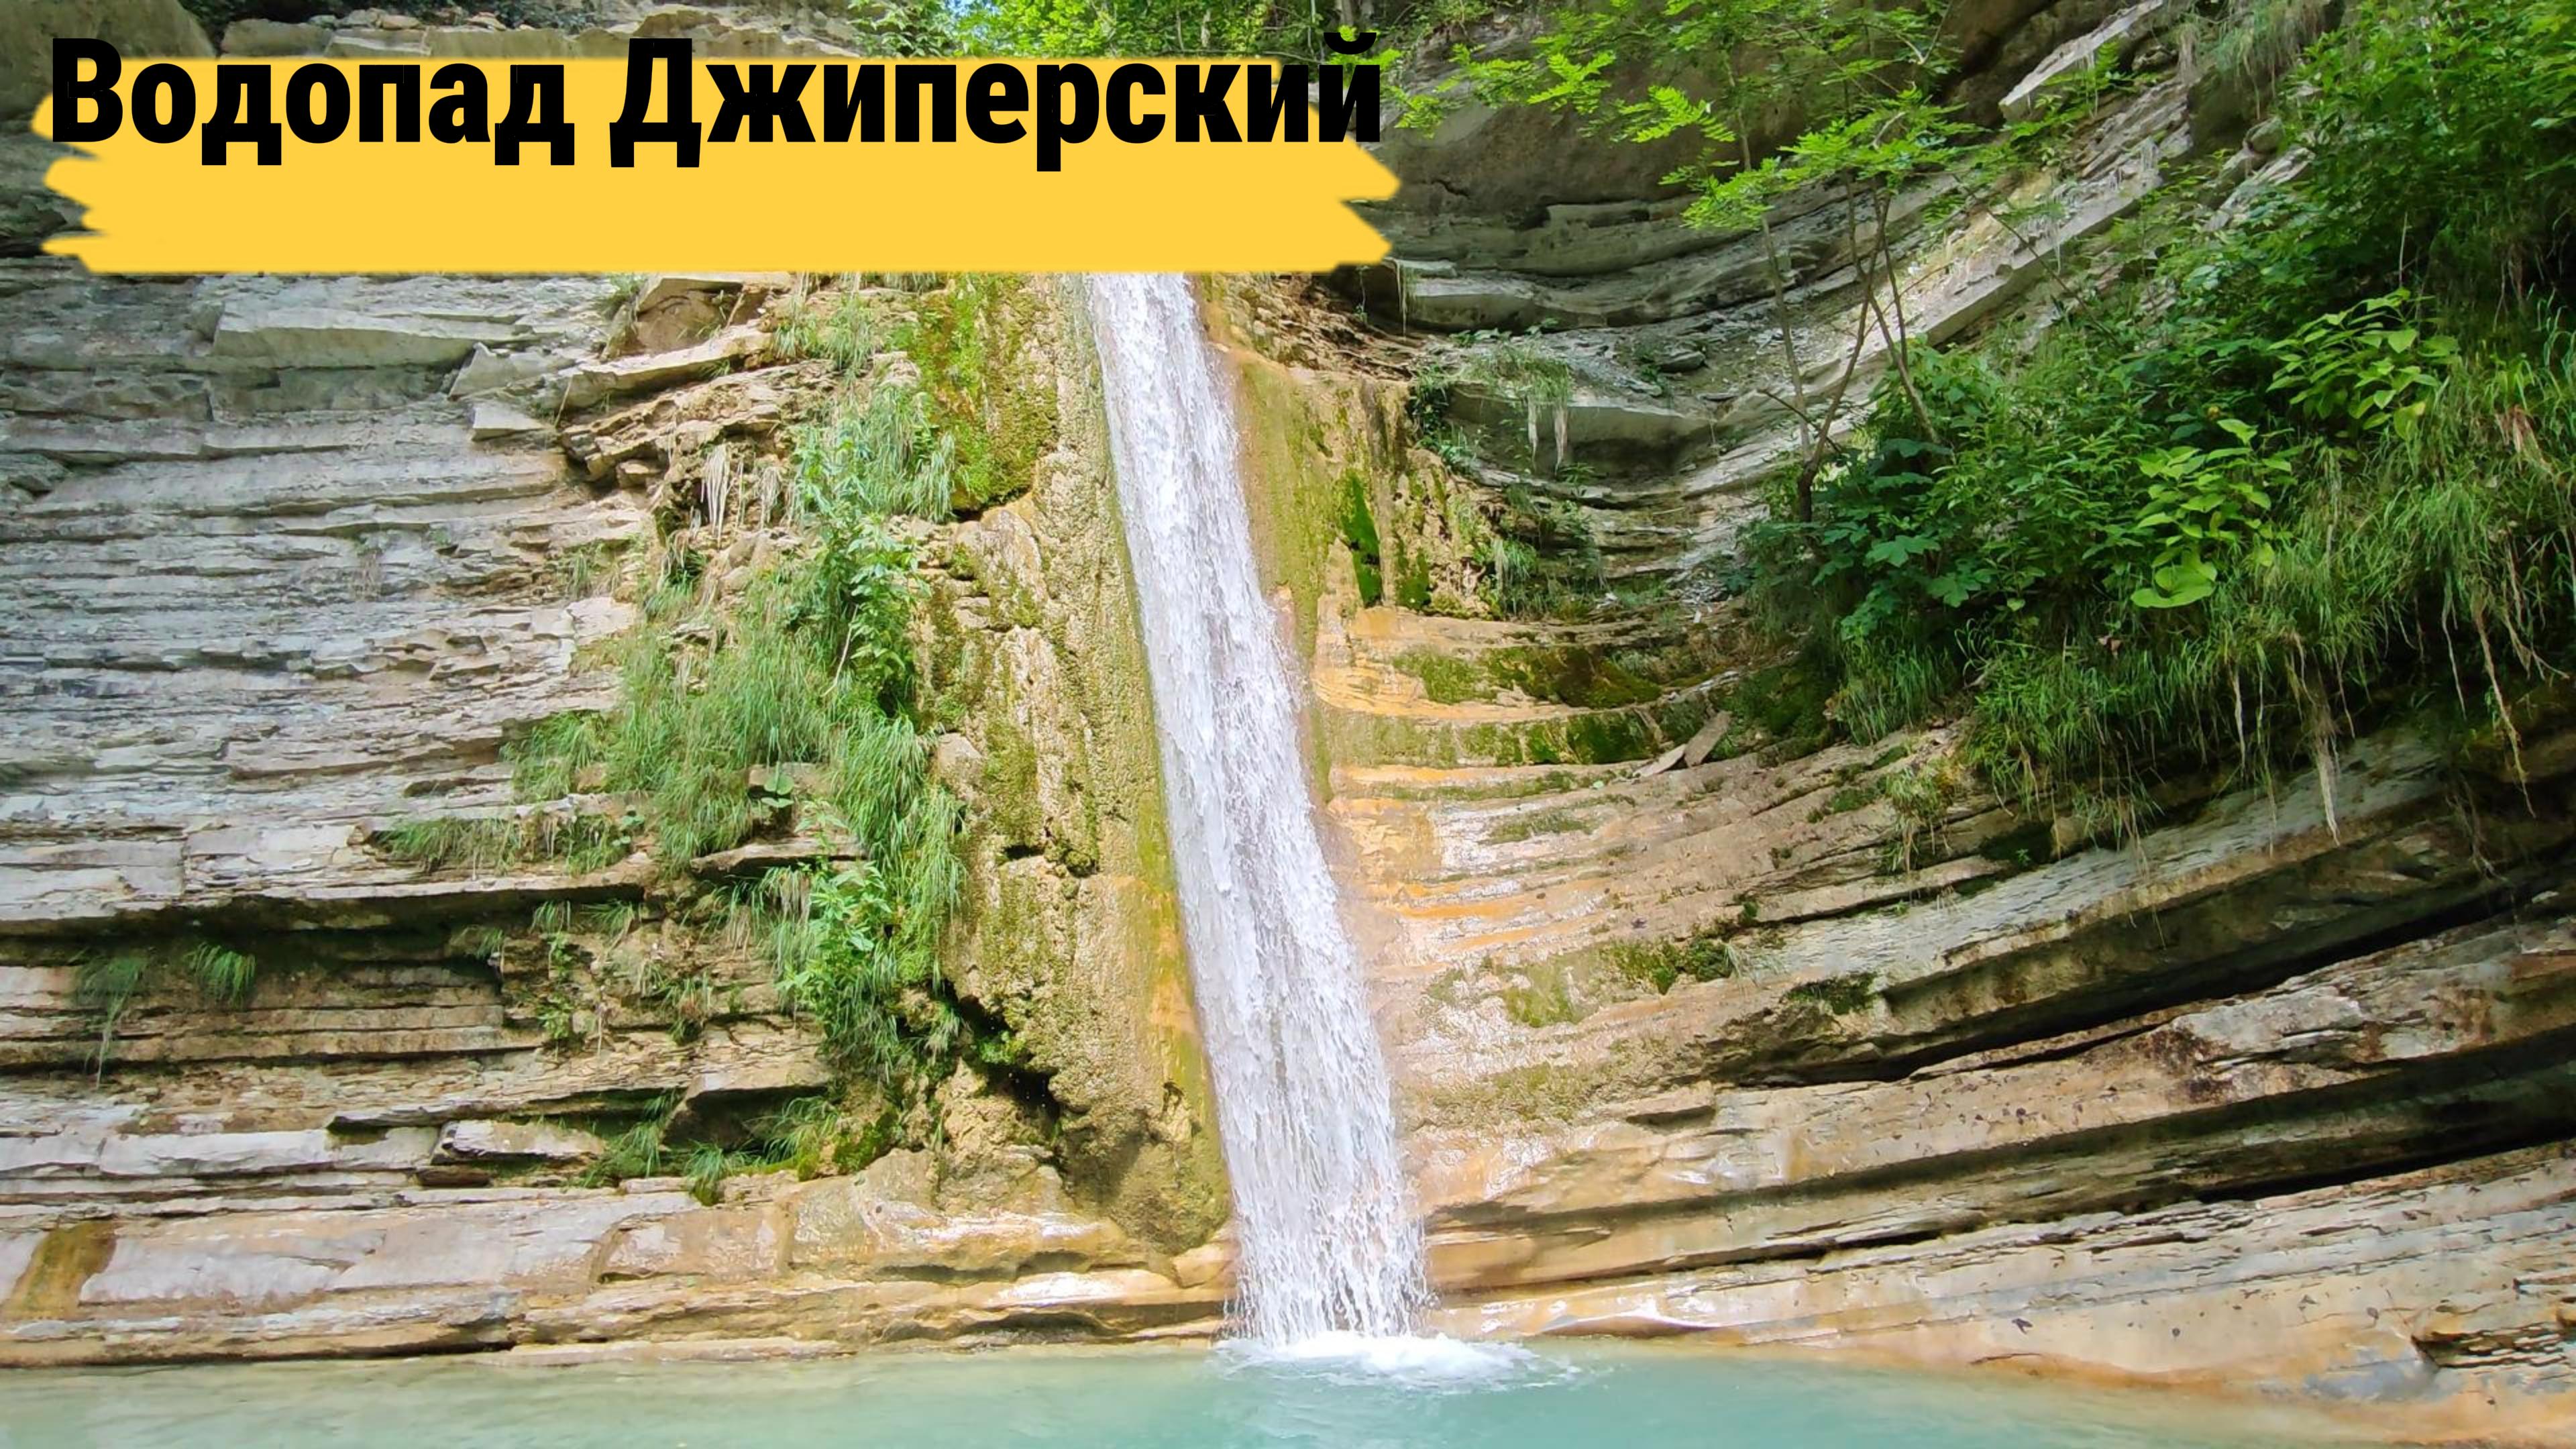 Водопад Джиперский - дальние водопады Куаго